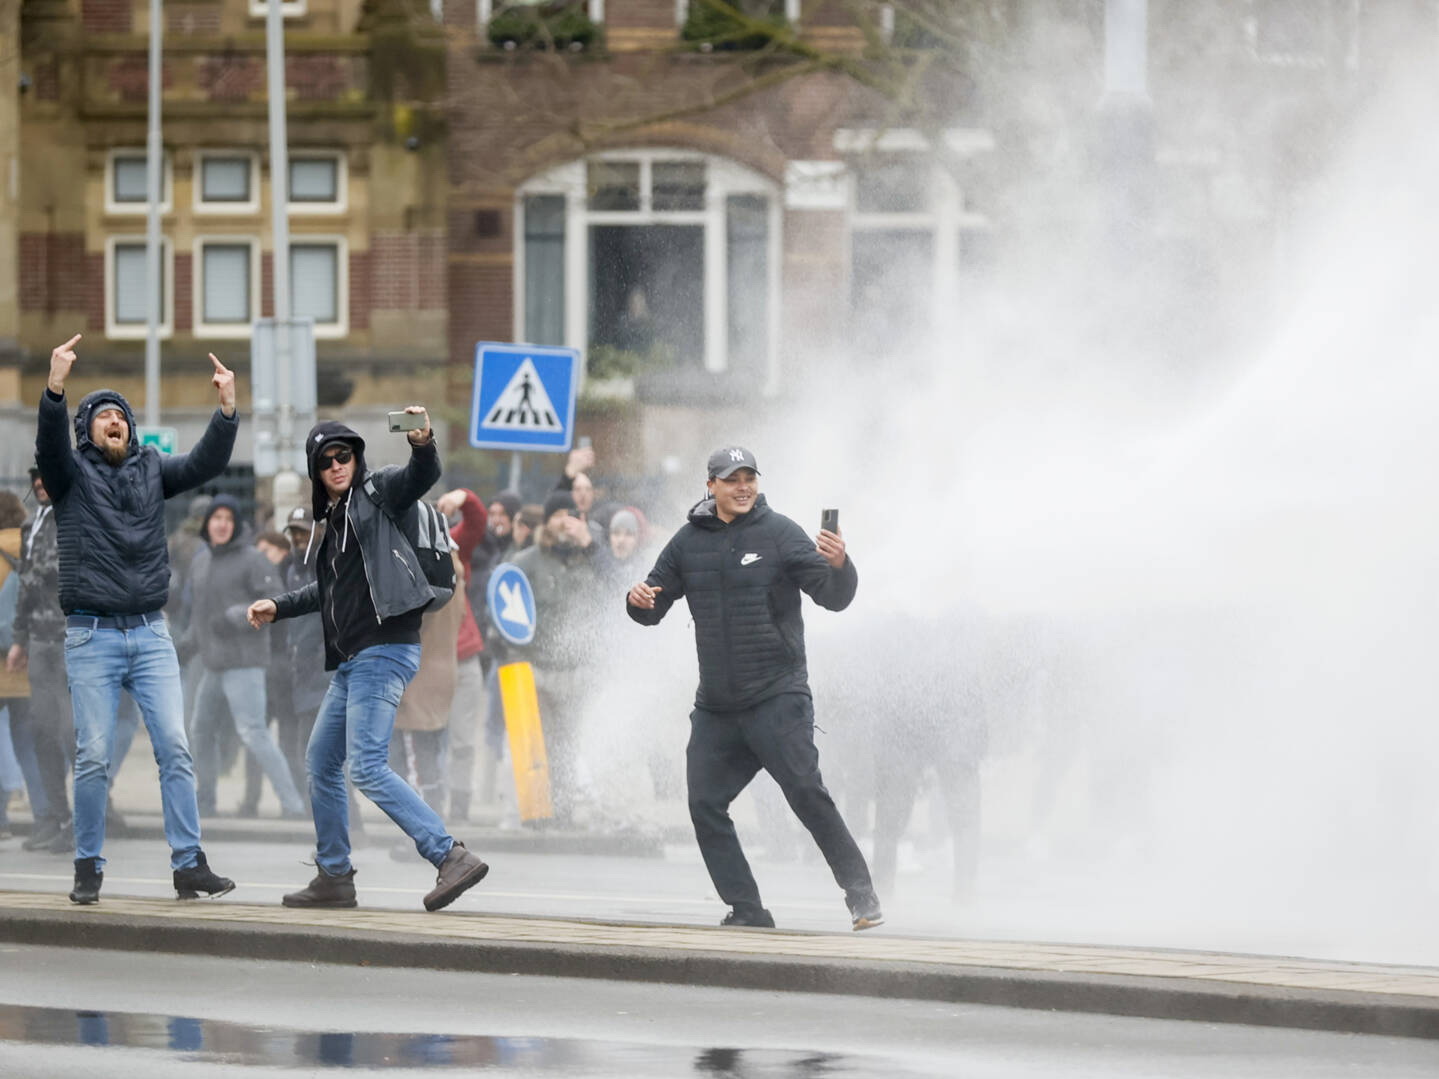 Жители выступили против. Слезоточивый ГАЗ для разгона демонстраций. Разгон демонстрации в Амстердаме. Водометы против демонстрантов. Водомет митинг.